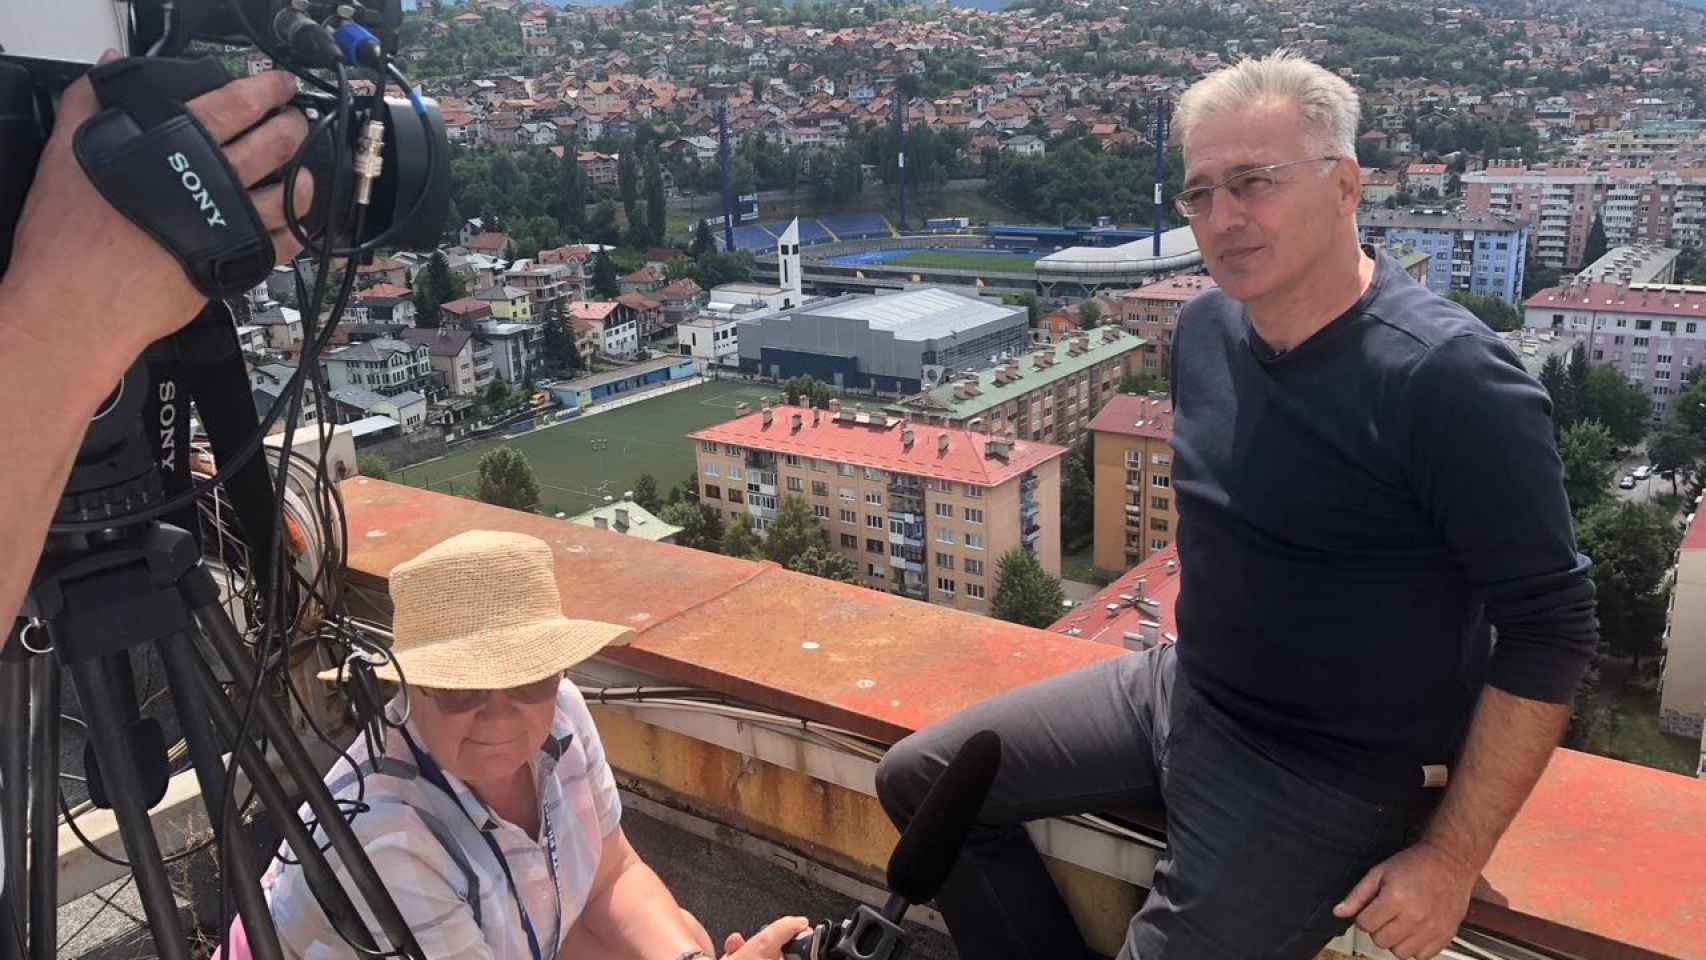 Safari' en Sarajevo: “Millonarios Occidentales Pagaron Grandes Sumas para Matar por Placer a Civiles Bosnios”